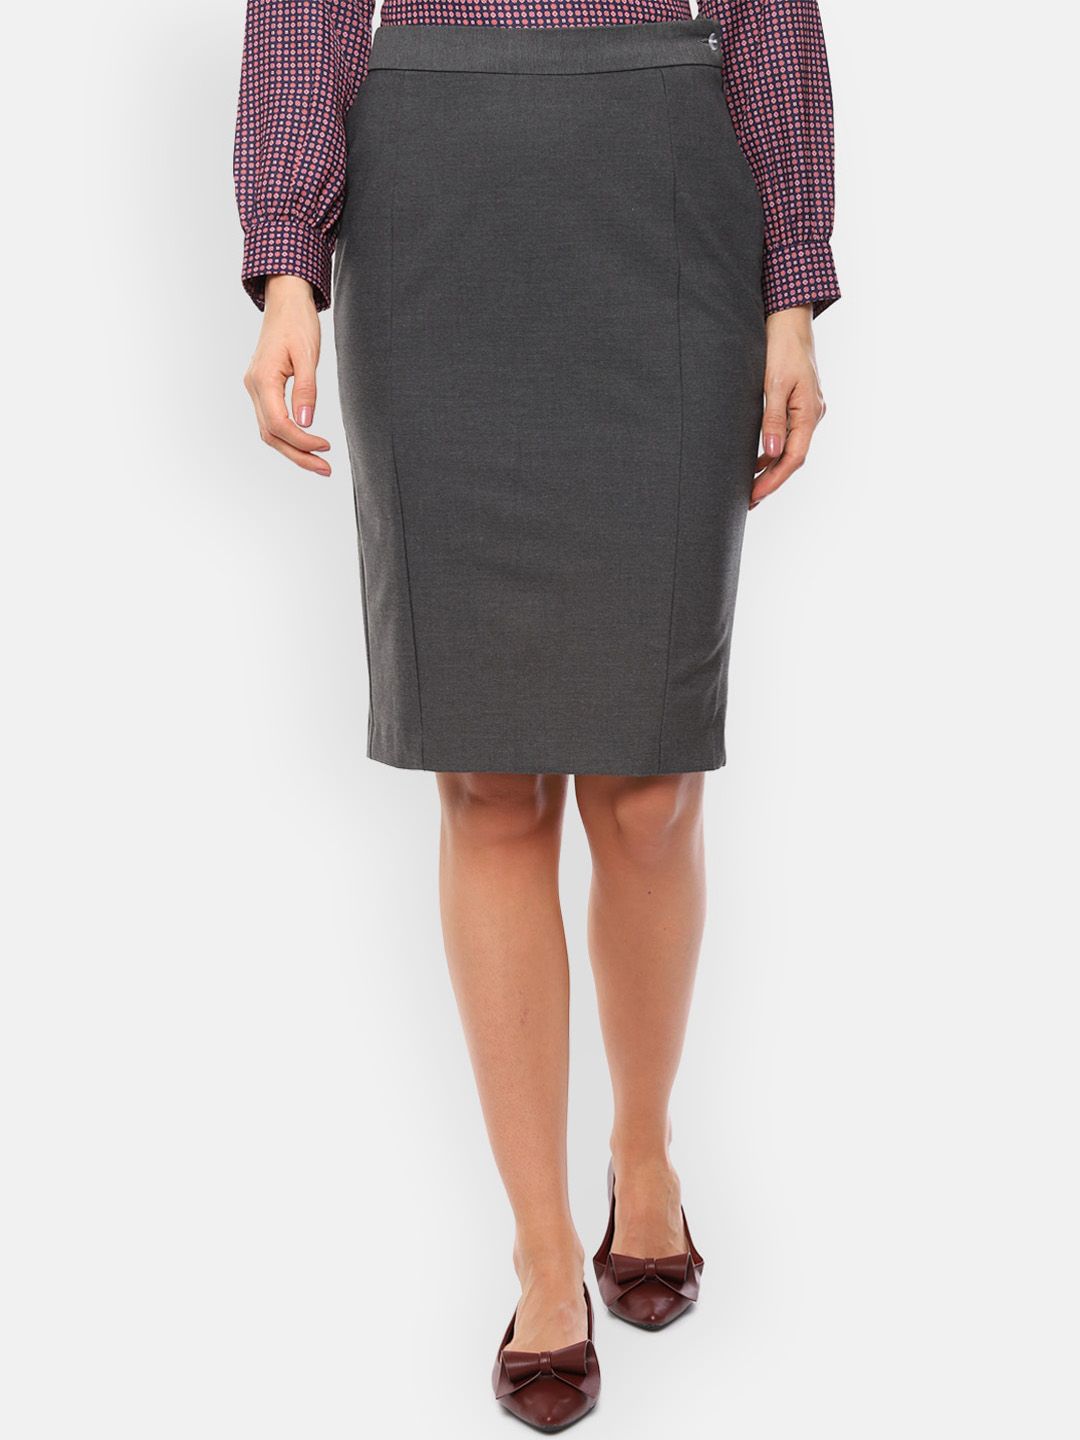 Van Heusen Grey Solid Pencil Skirt Price in India